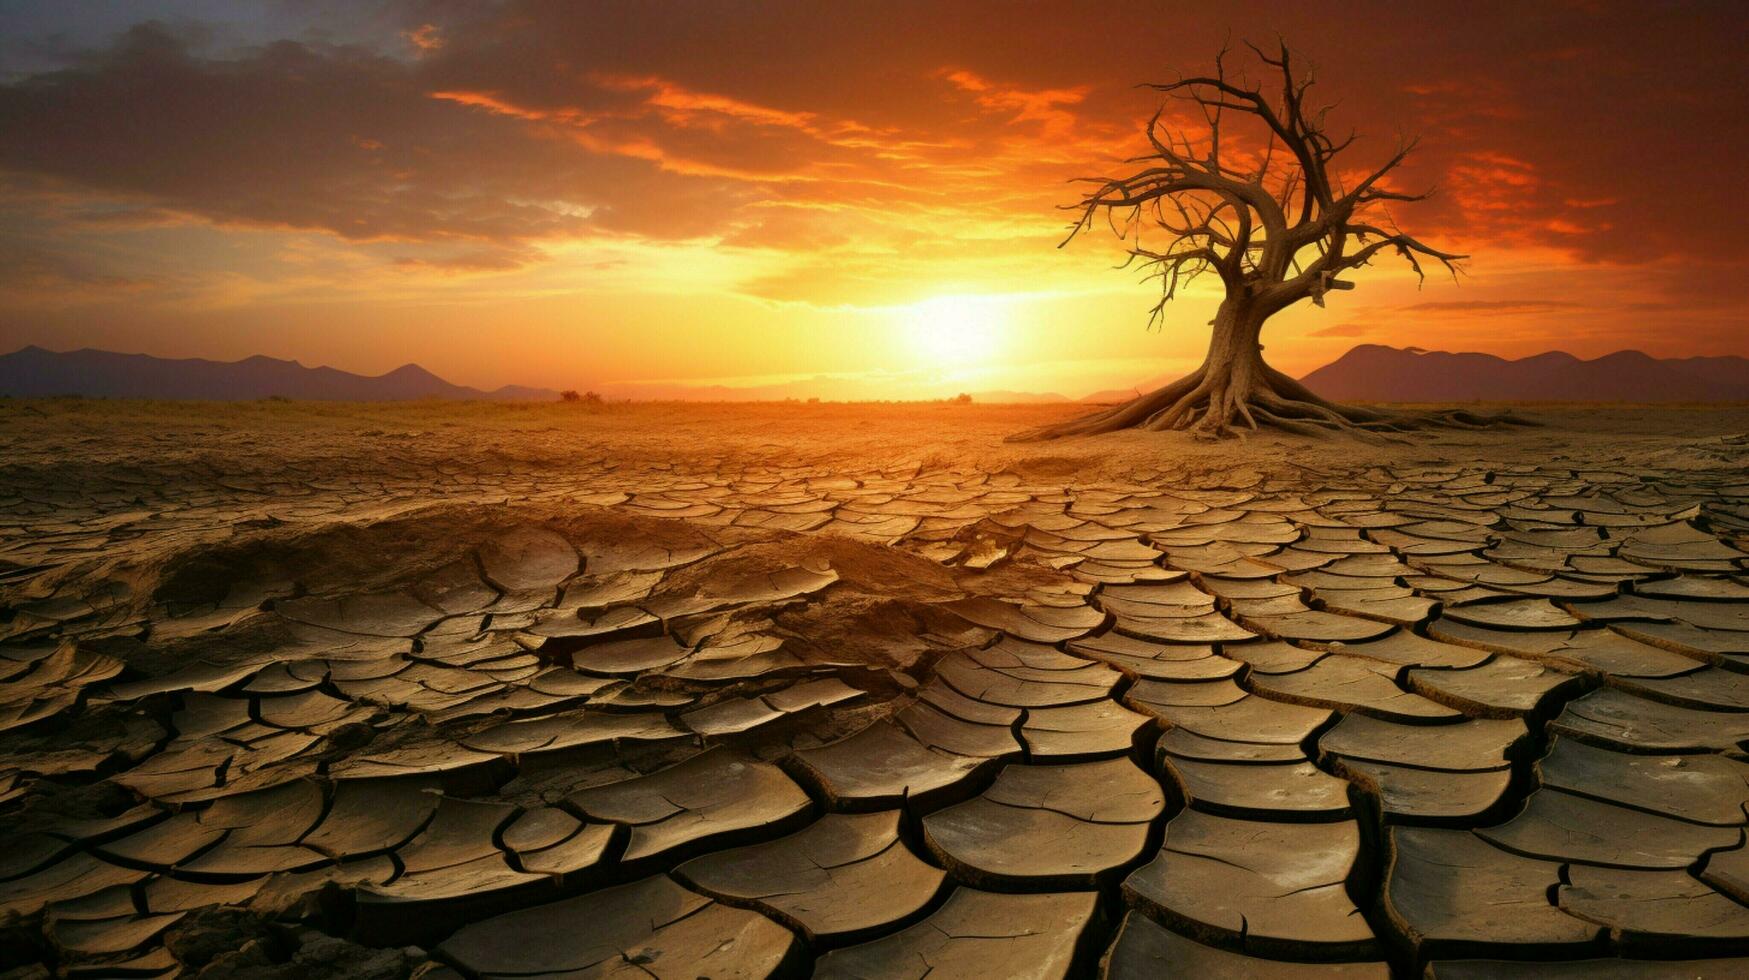 árido barro paisaje roto árbol puesta de sol temporada foto